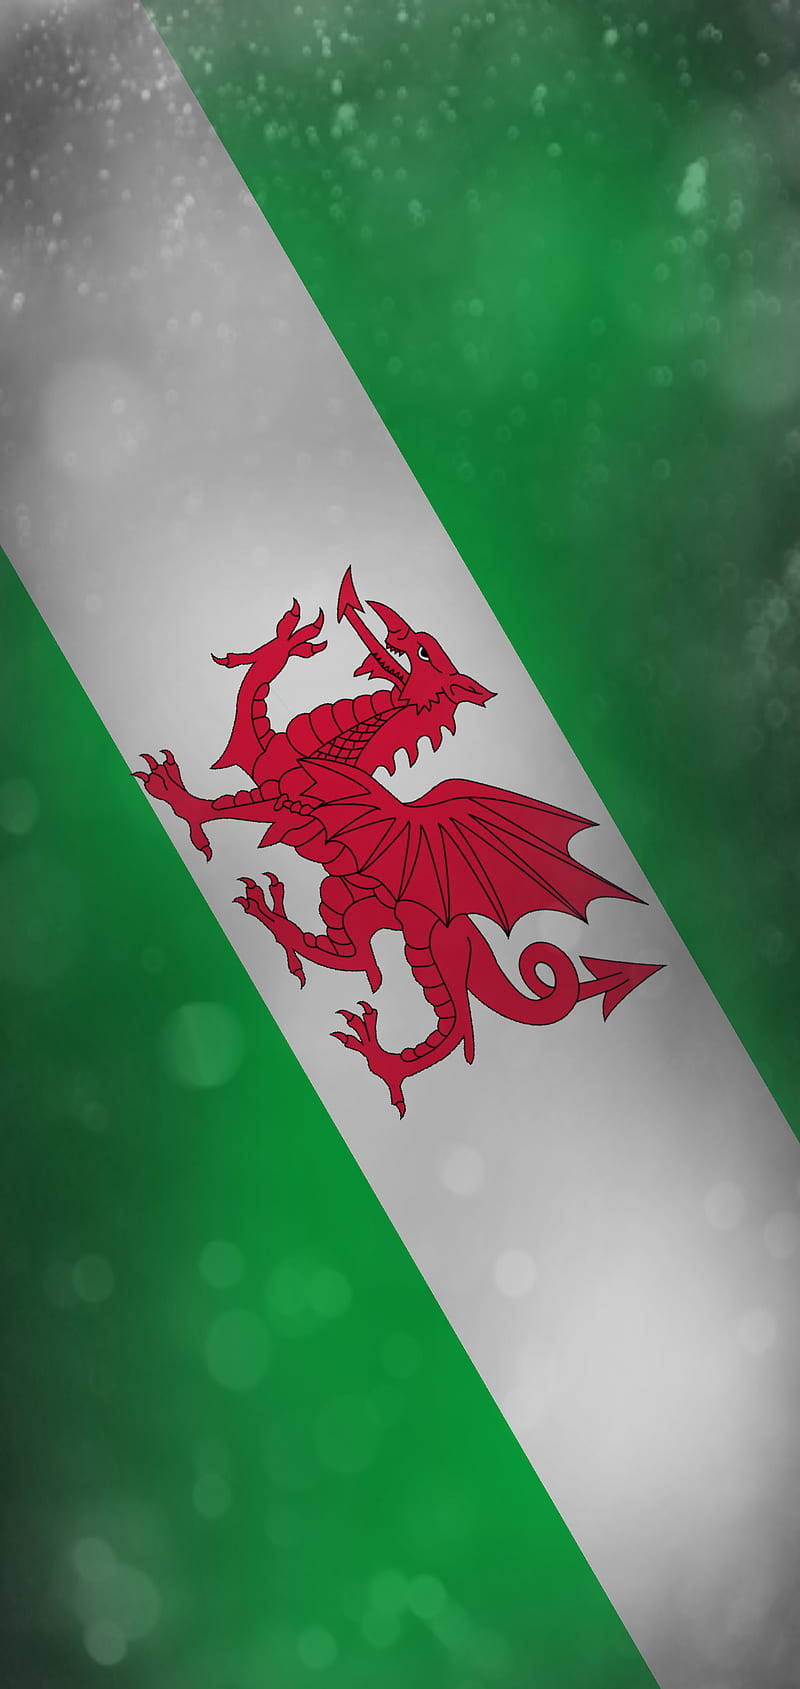 Bandeirada Seleção Nacional De Futebol Do País De Gales Em Diagonal E Retrato Para Papel De Parede Do Computador Ou Celular. Papel de Parede